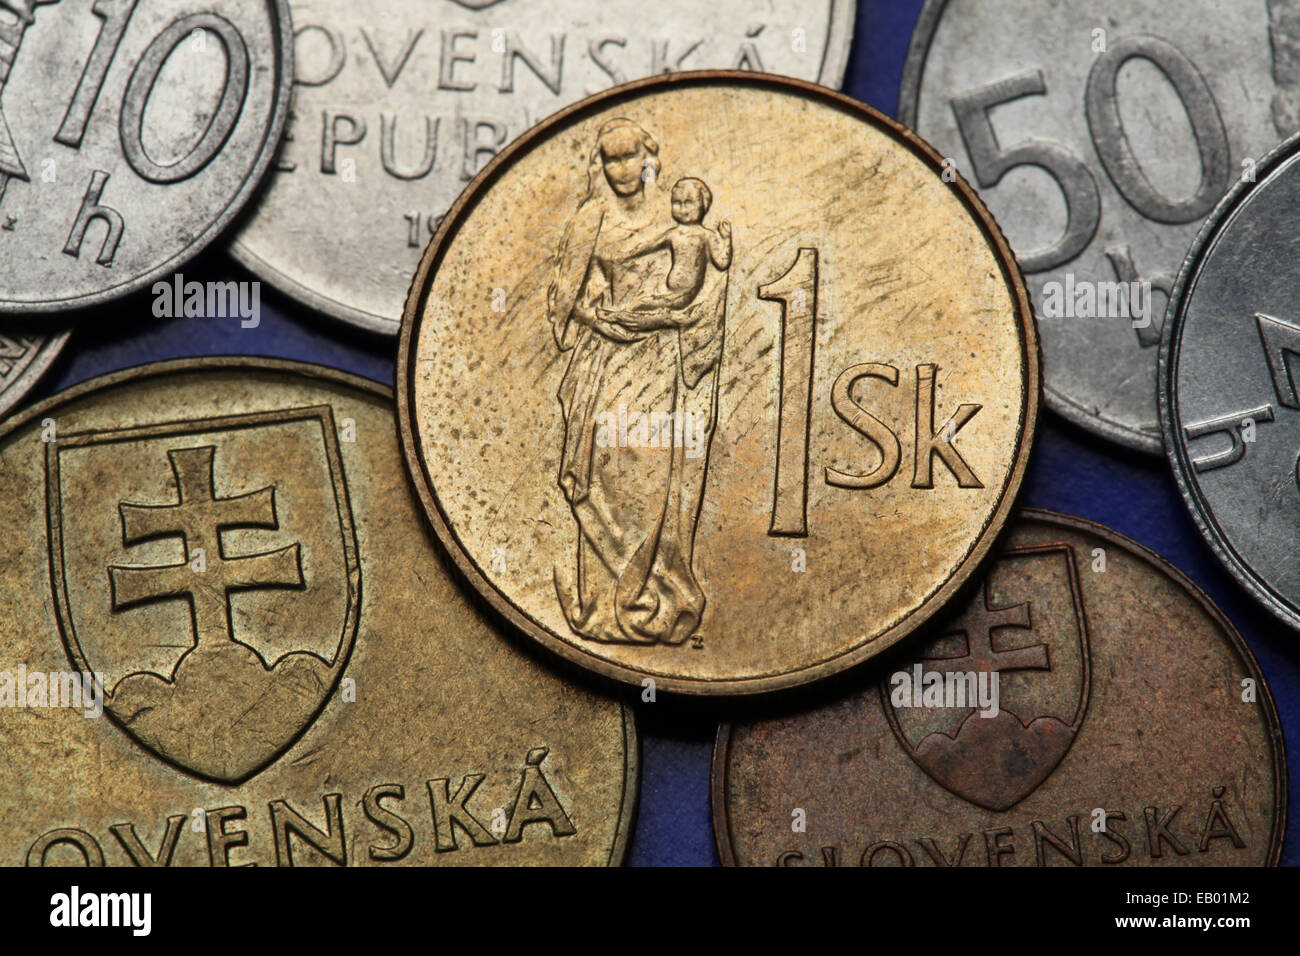 Münzen der Slowakei. Gotische hölzerne Skulptur der Madonna mit Kind auf der slowakischen Krone eine Münze dargestellt. Stockfoto